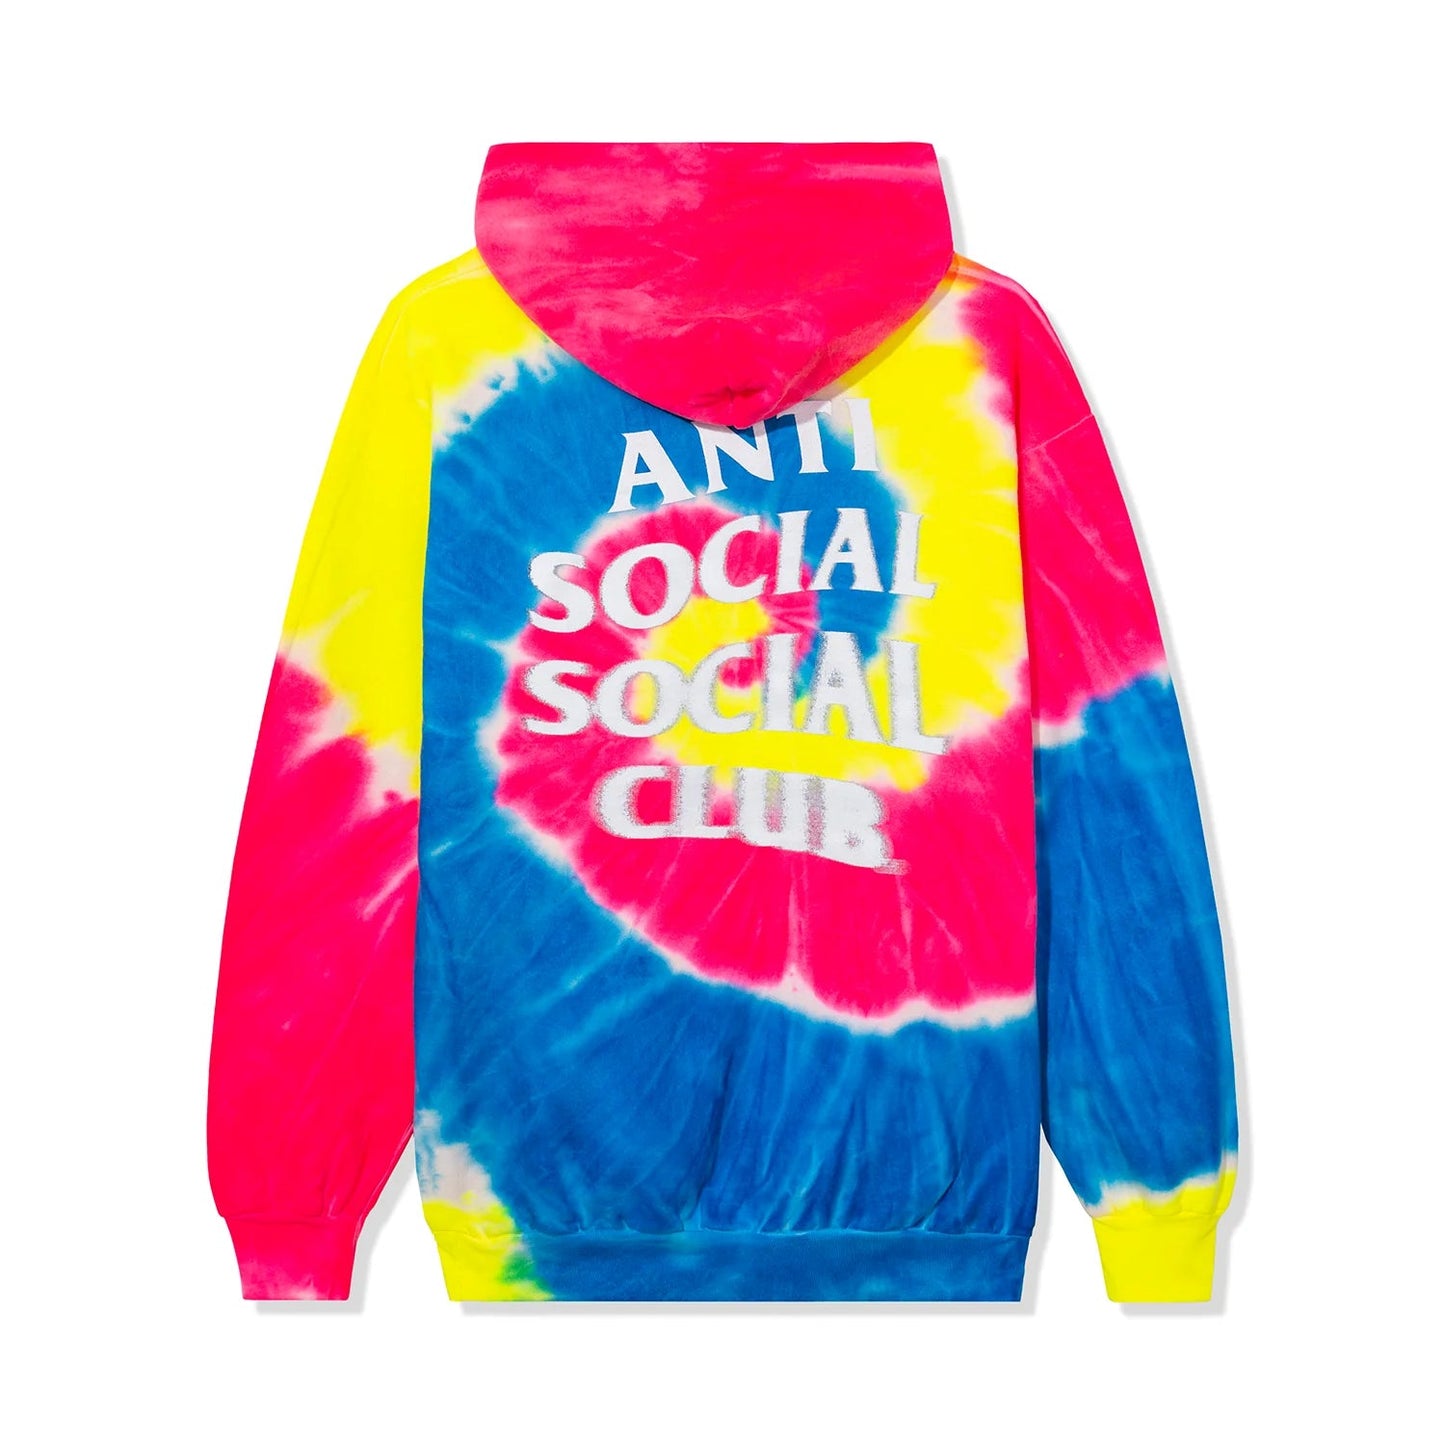 Anti Social Social Club Six 3 Seven Hoodie Tie Dye - Sneakersbe Sneakers Sale Online